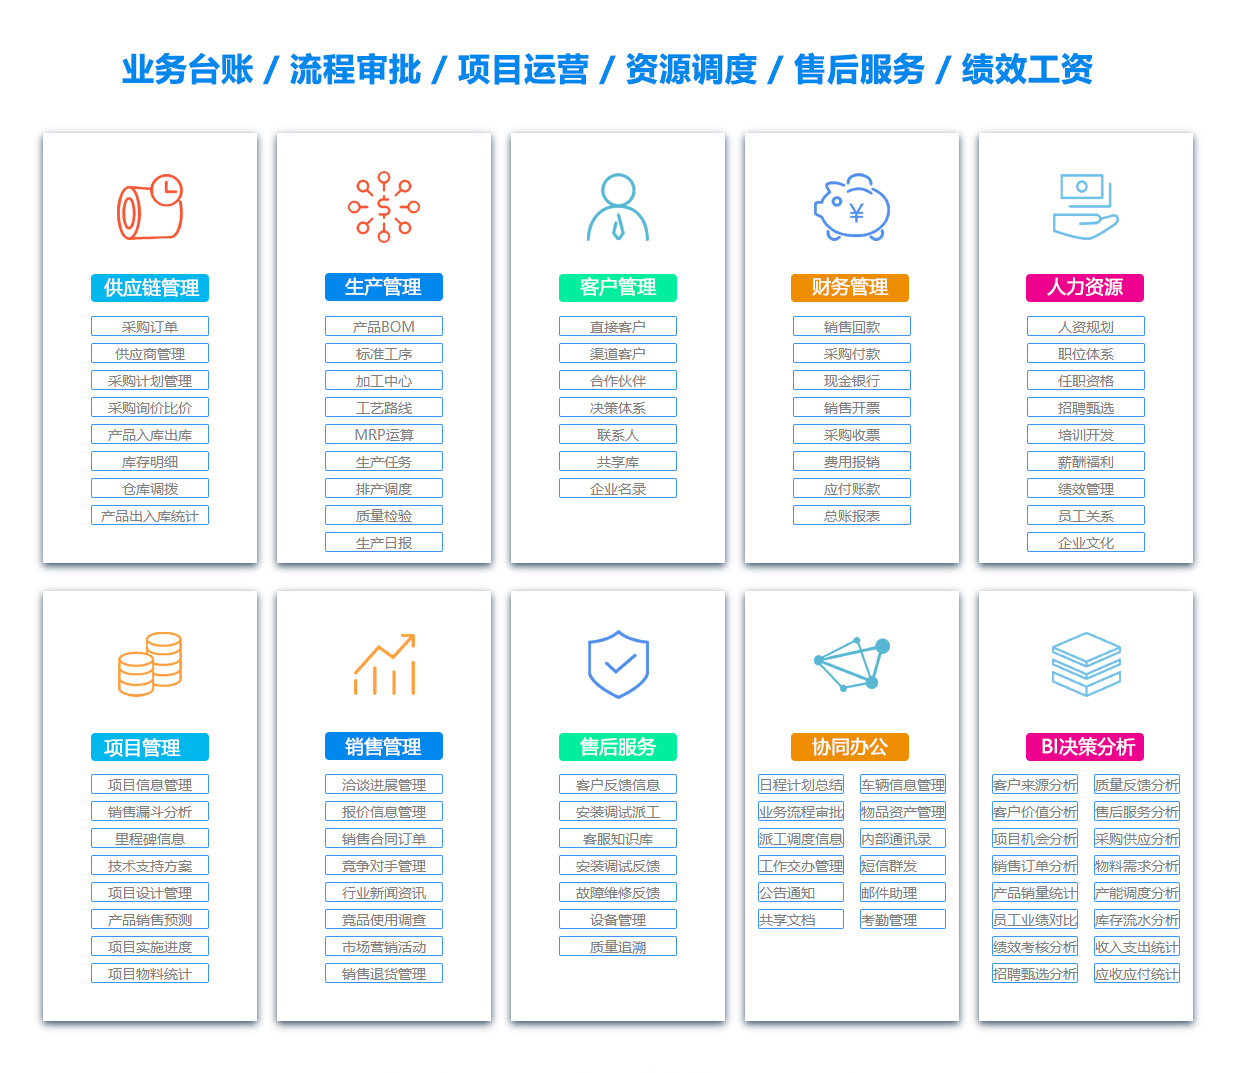 晋城PDM:产品数据管理系统